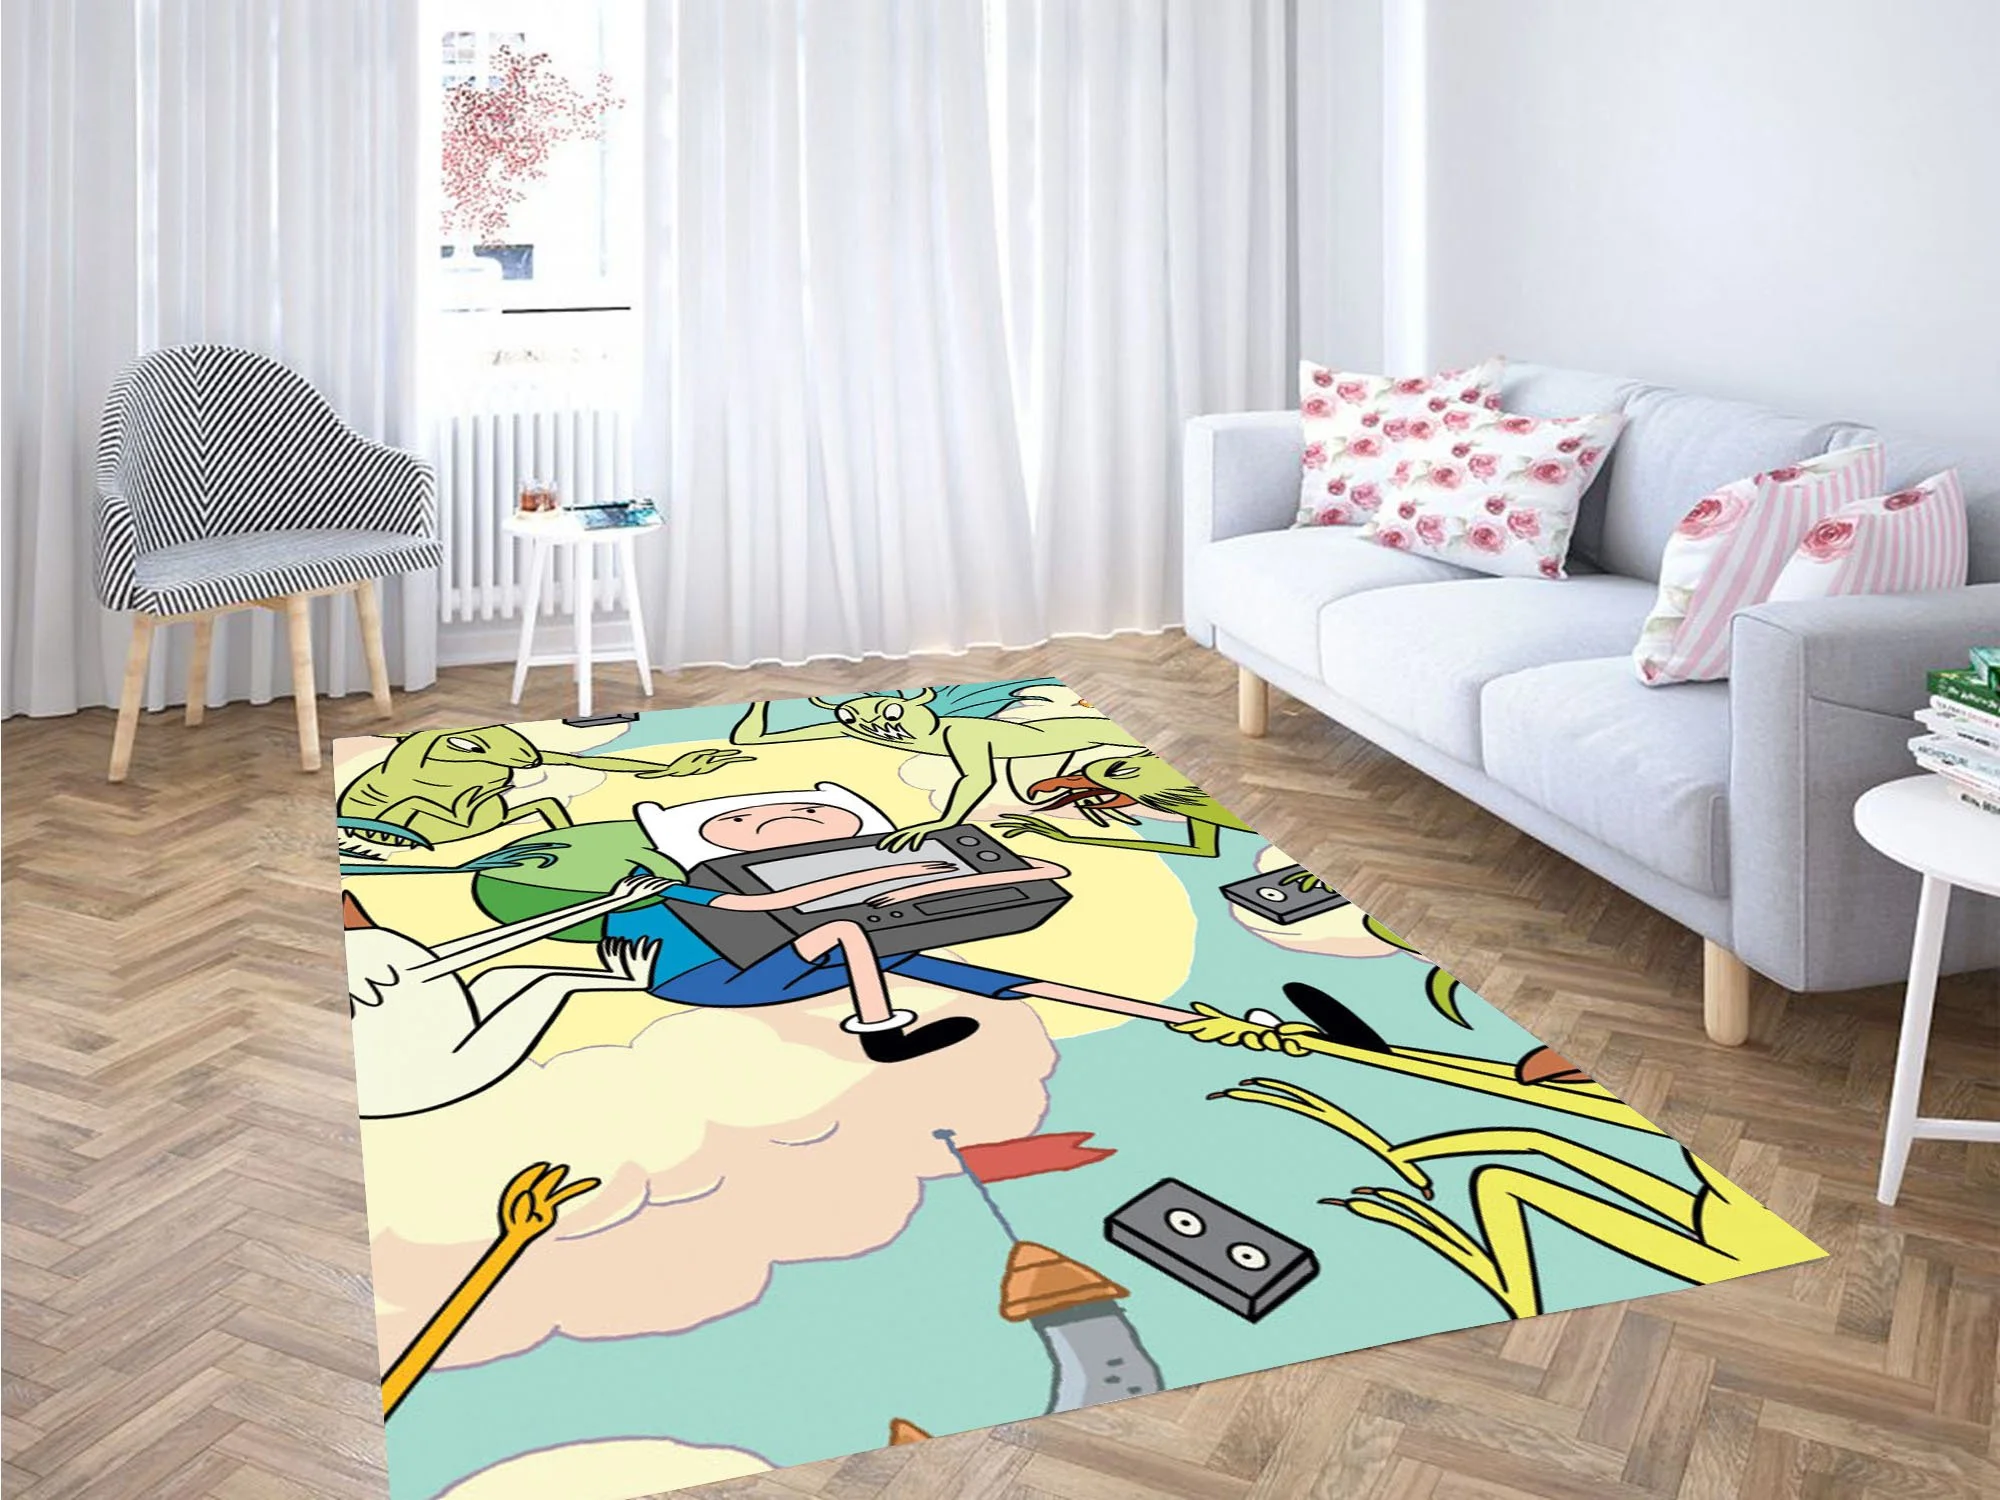 Cutest Finn Adventure Time Carpet Rug